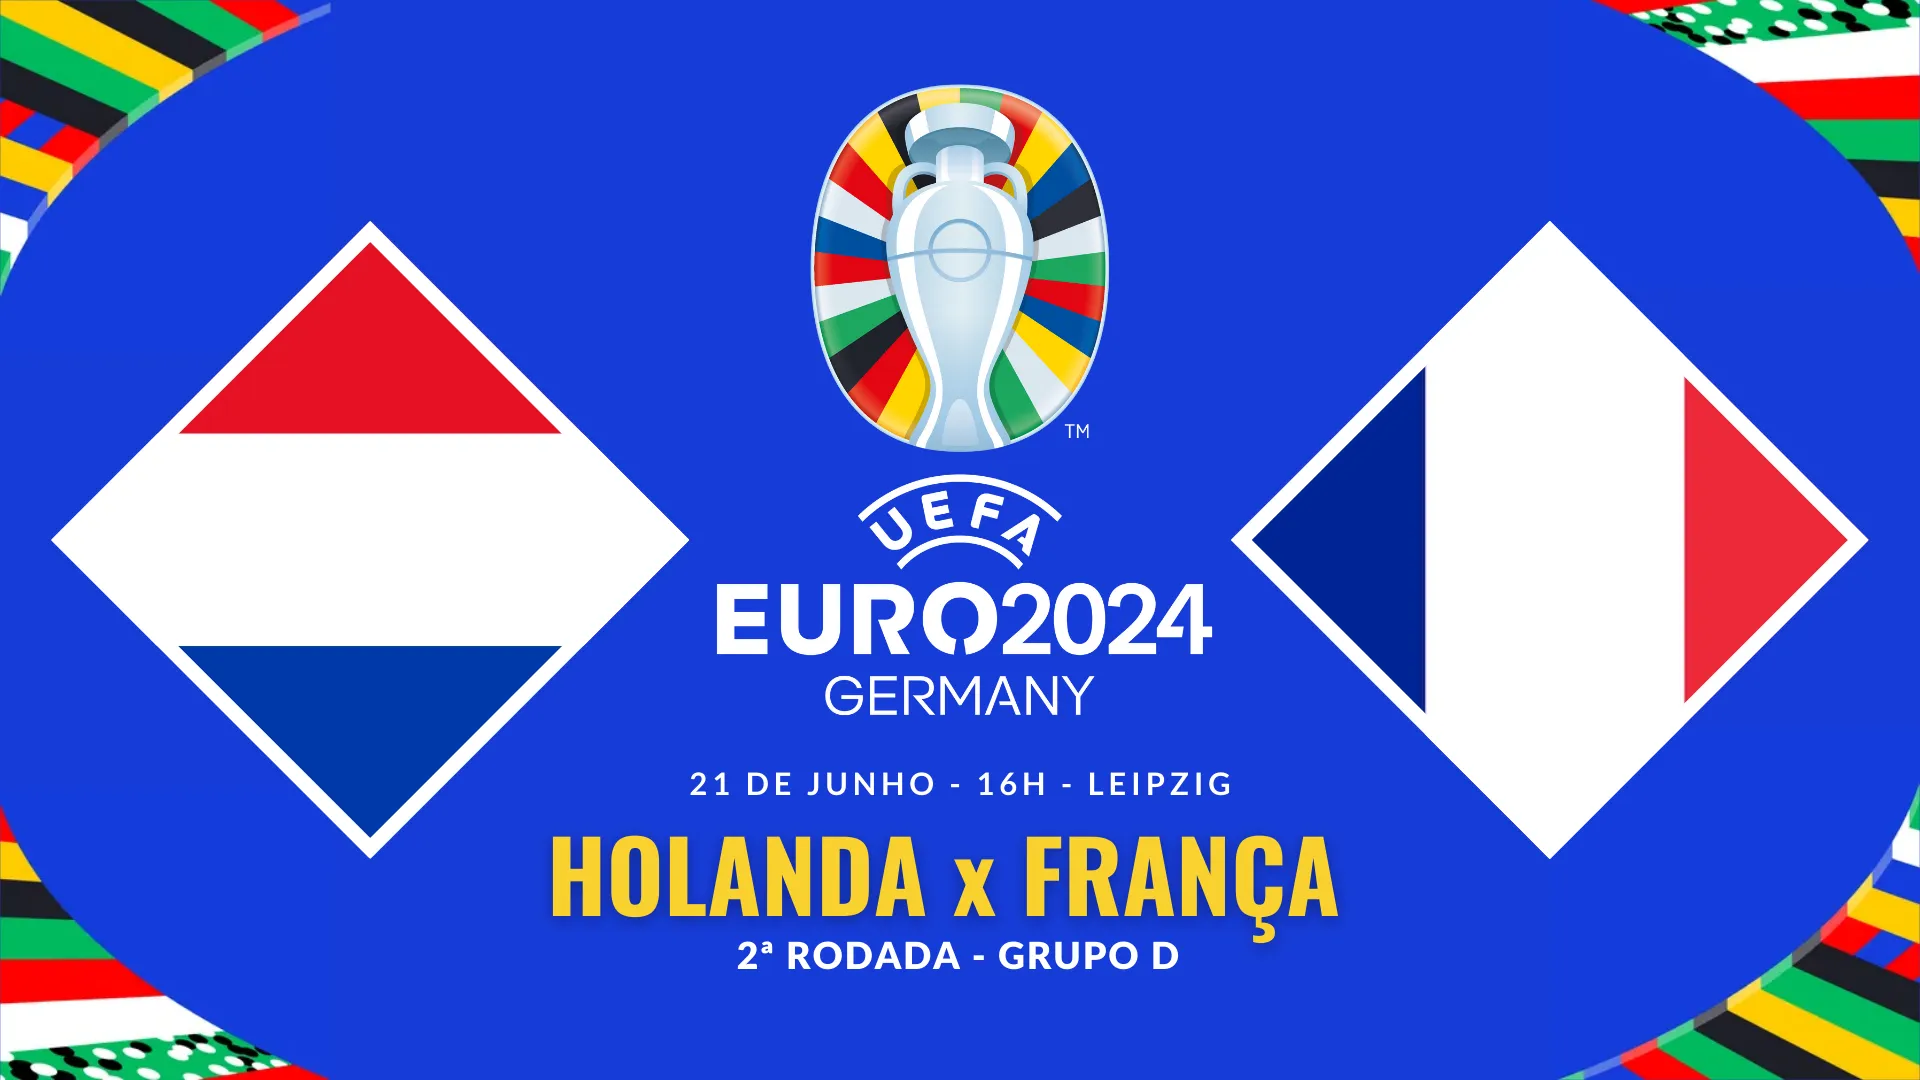 Holanda x França, 2ª rodada do Grupo D da Euro 2024